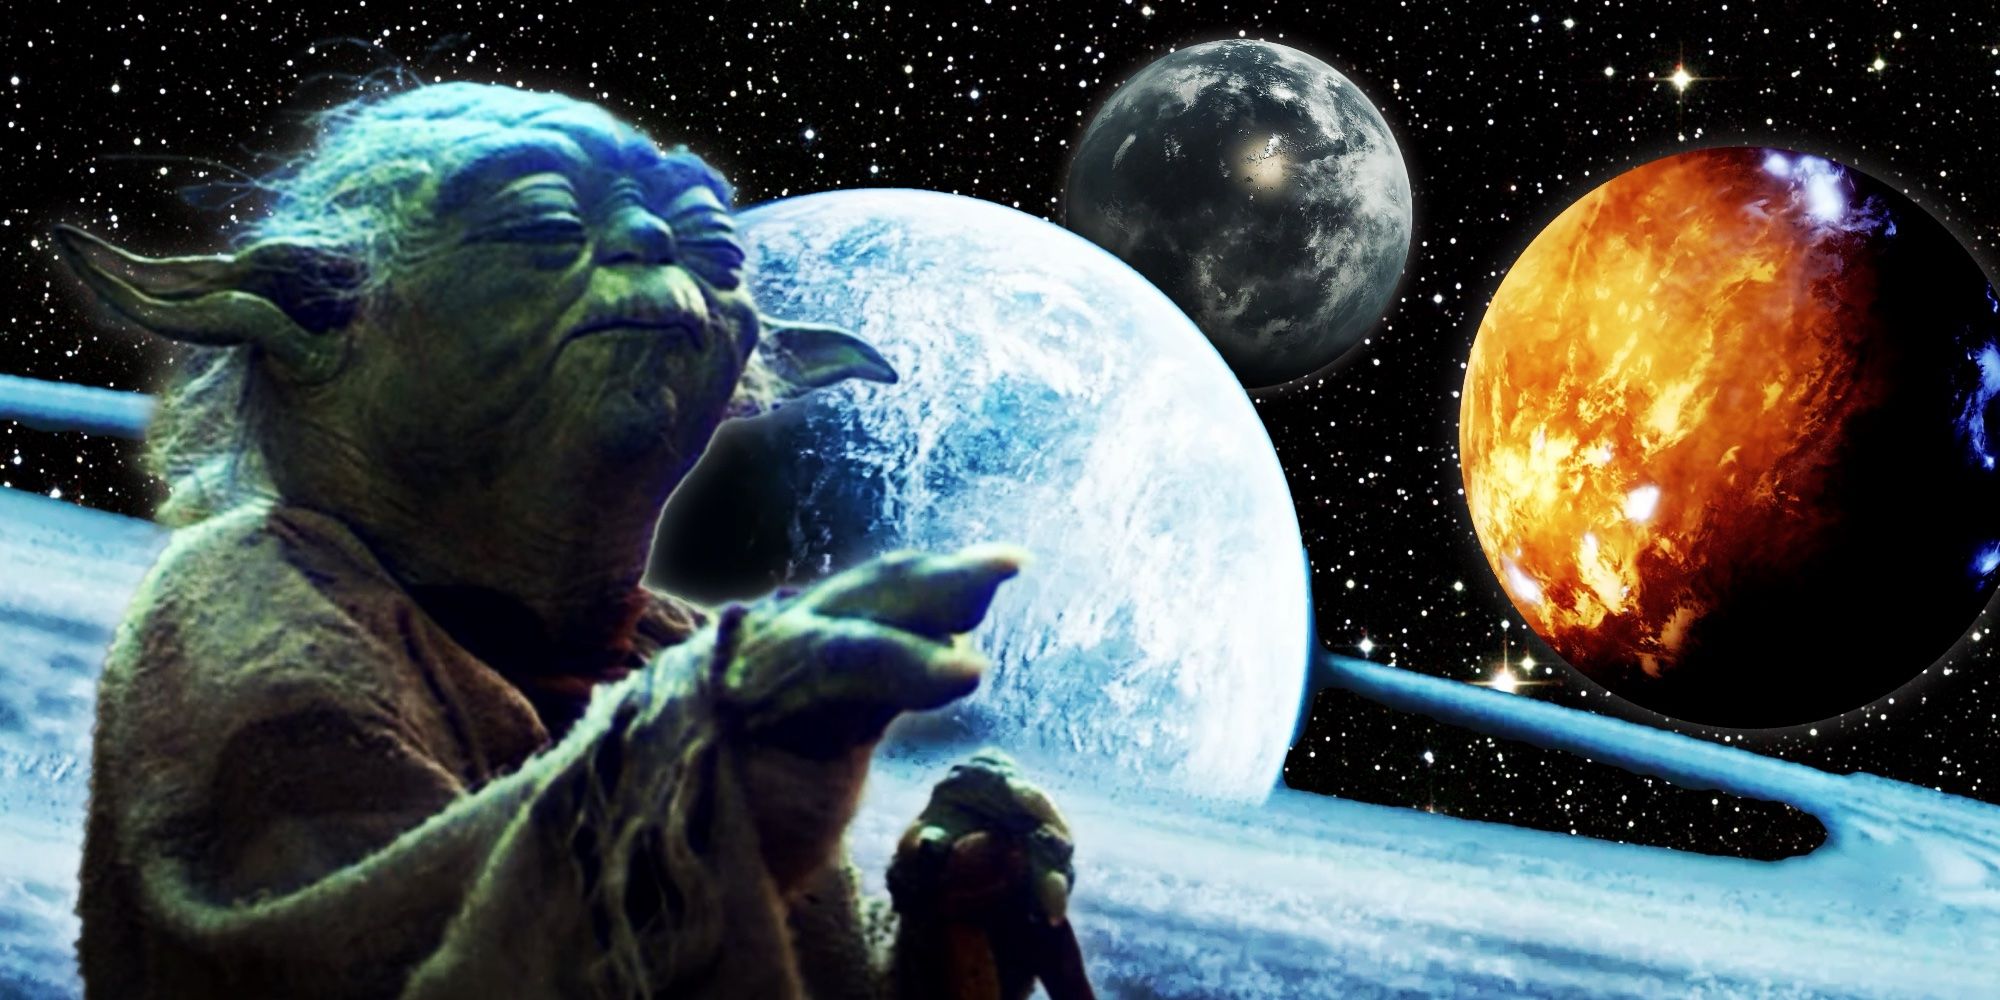 Star Wars estableció en secreto un posible origen Jedi hace 4 años